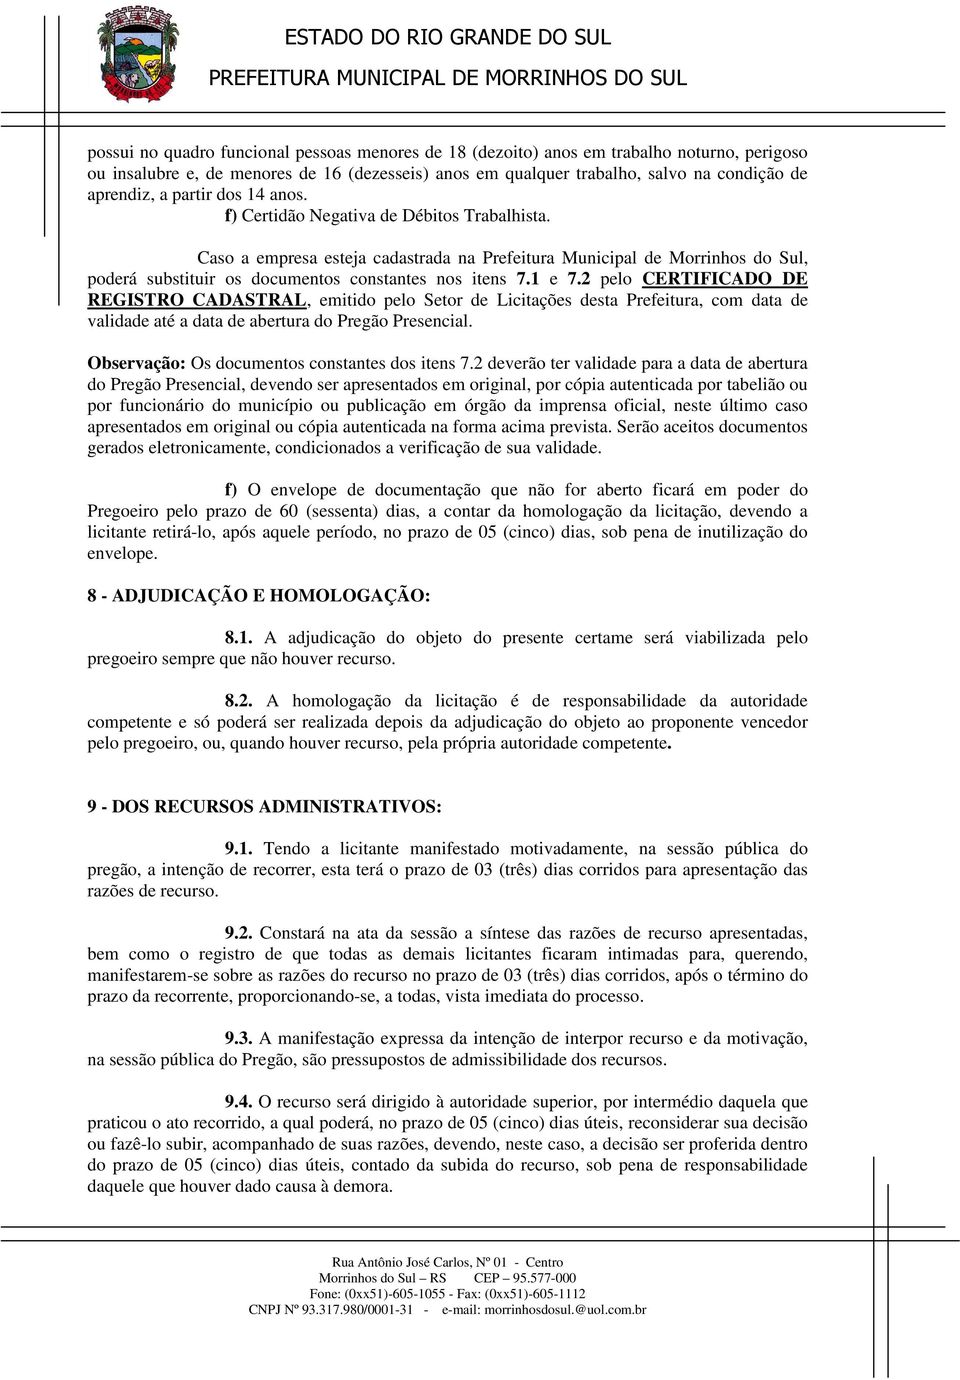 1 e 7.2 pelo CERTIFICADO DE REGISTRO CADASTRAL, emitido pelo Setor de Licitações desta Prefeitura, com data de validade até a data de abertura do Pregão Presencial.